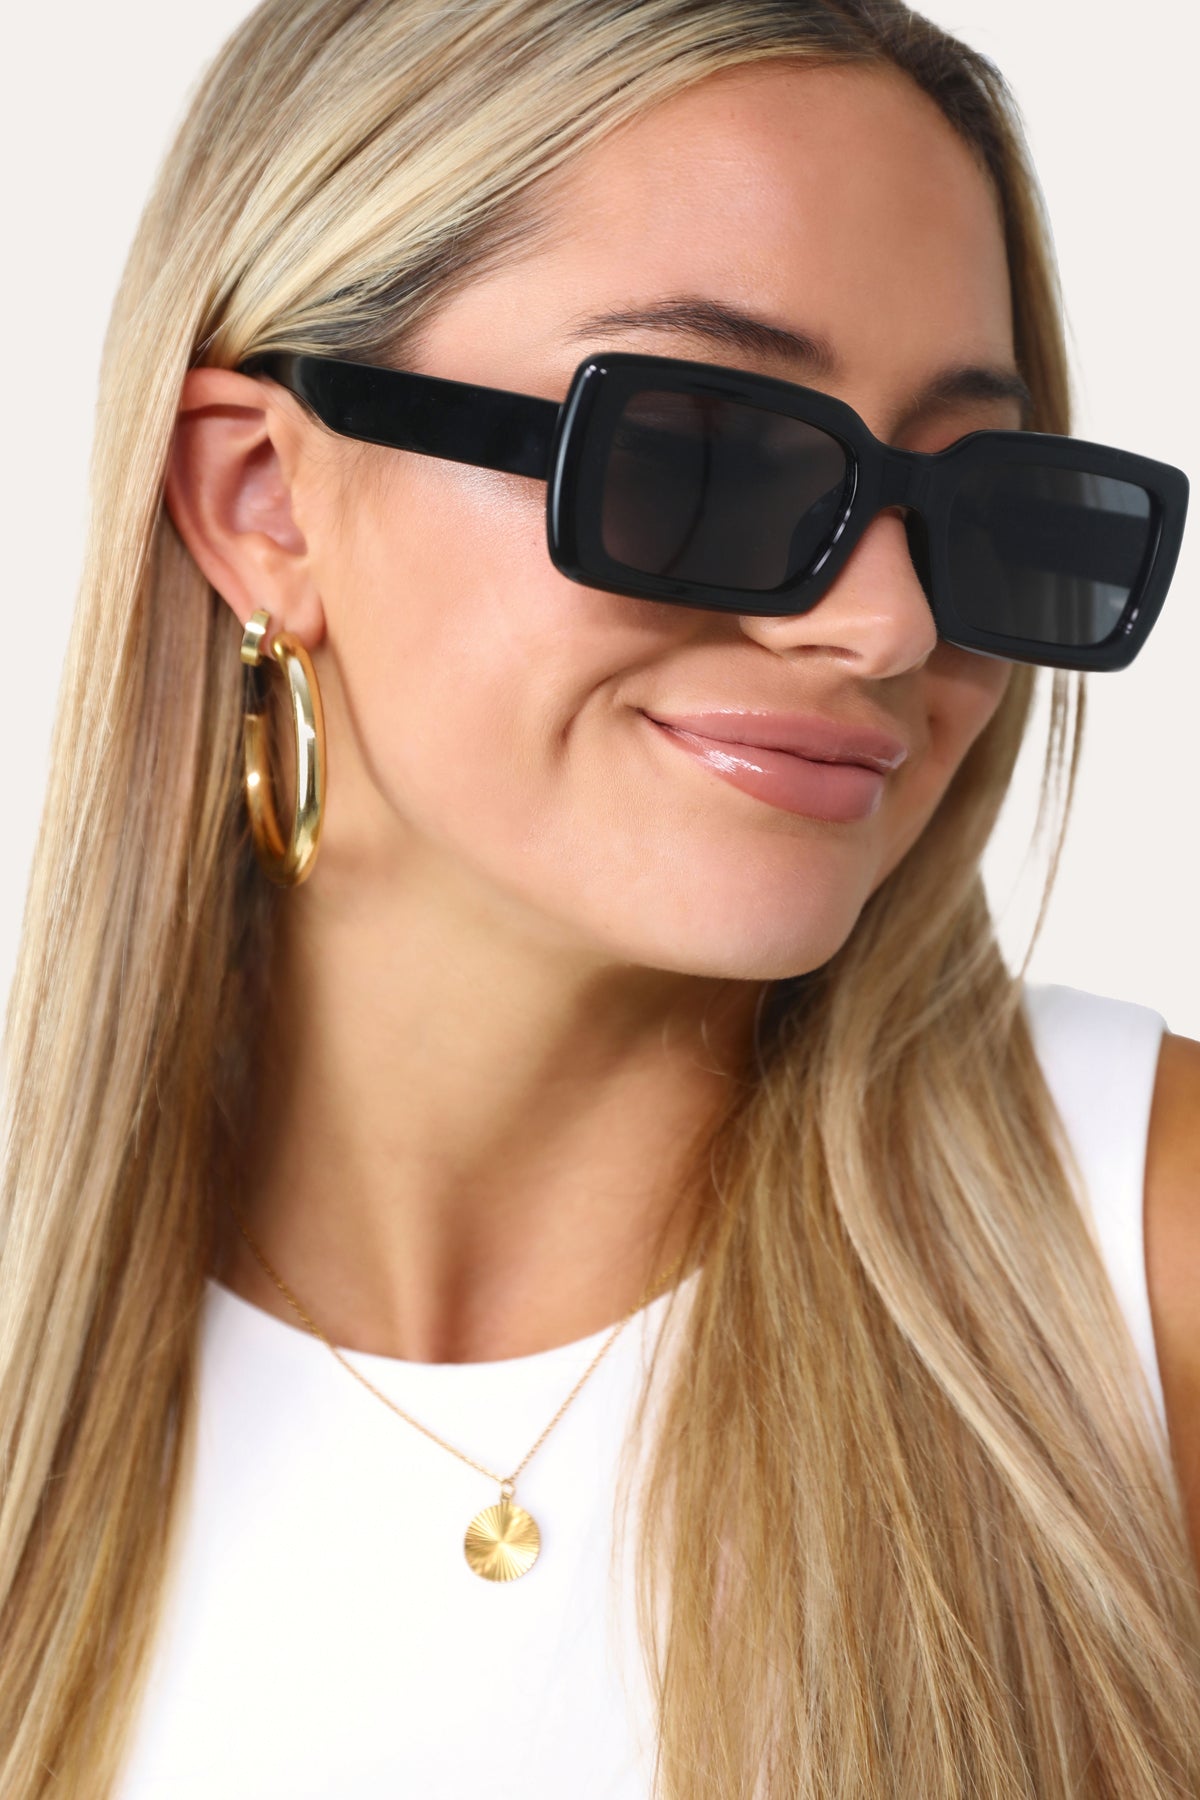  Model wearing The Ali black square sunglasses.